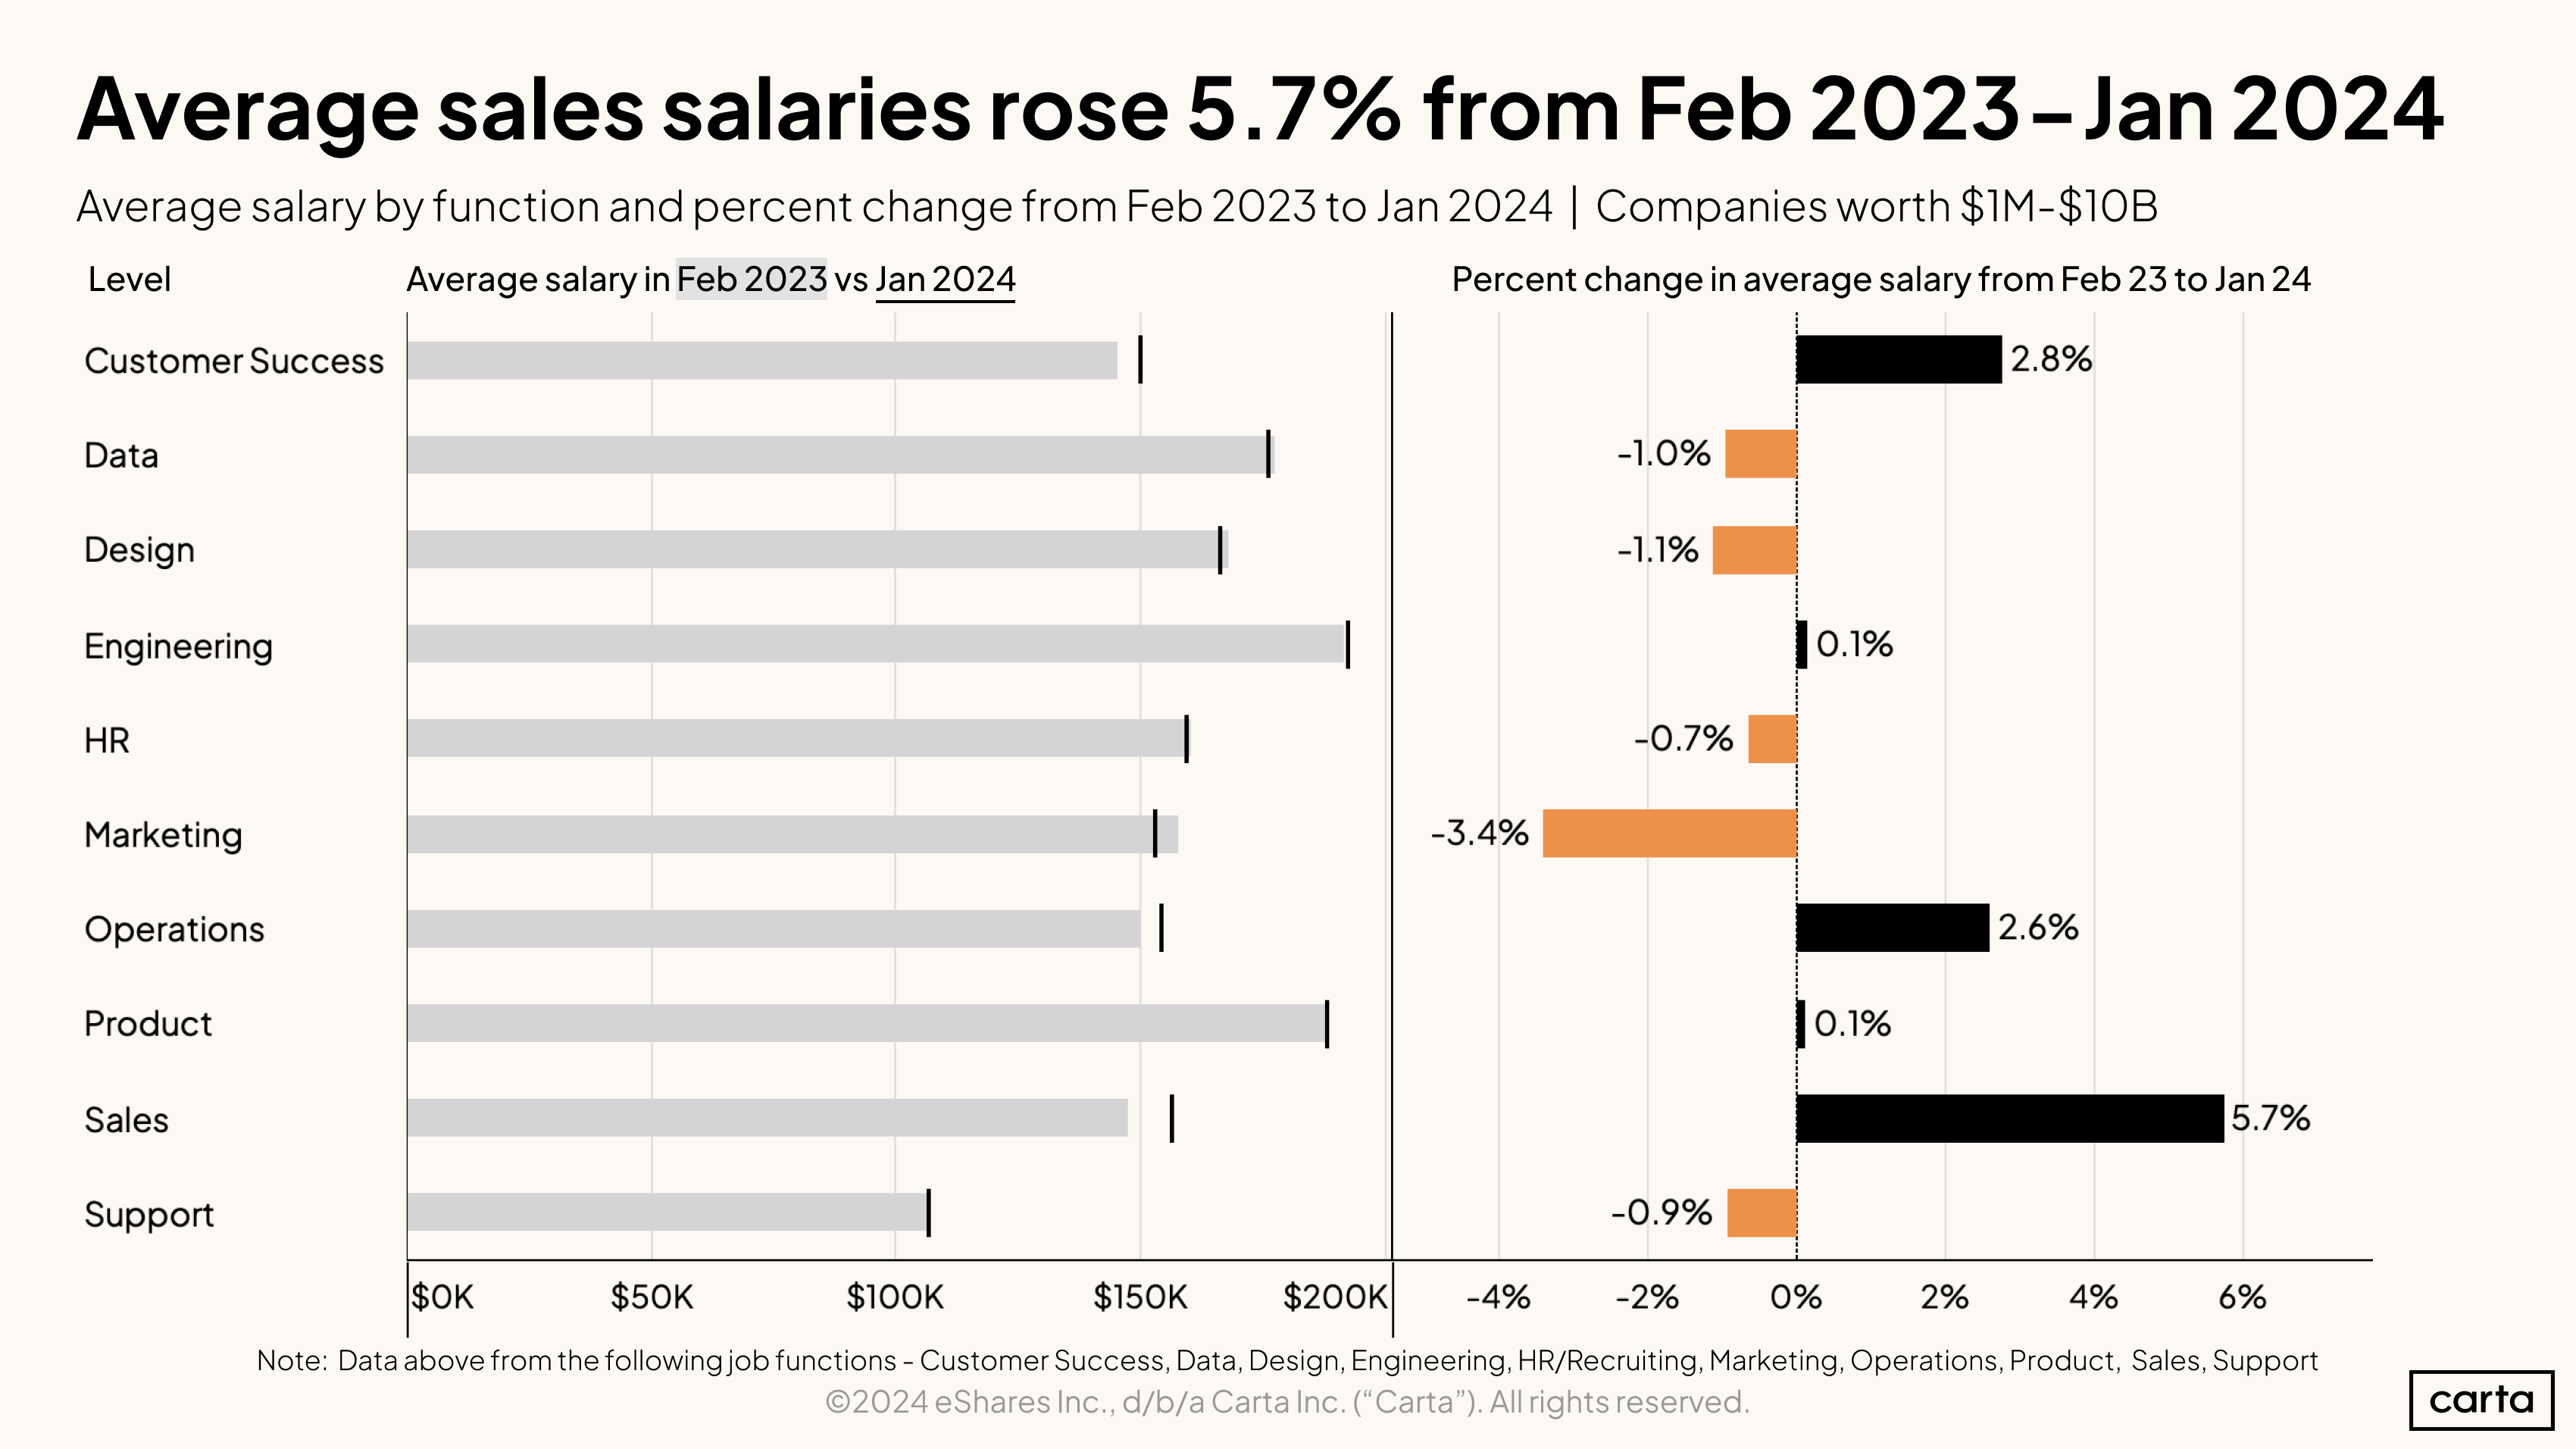 Average sales salaries rose 5.7 percent from Feb 2023 - Jan 2024